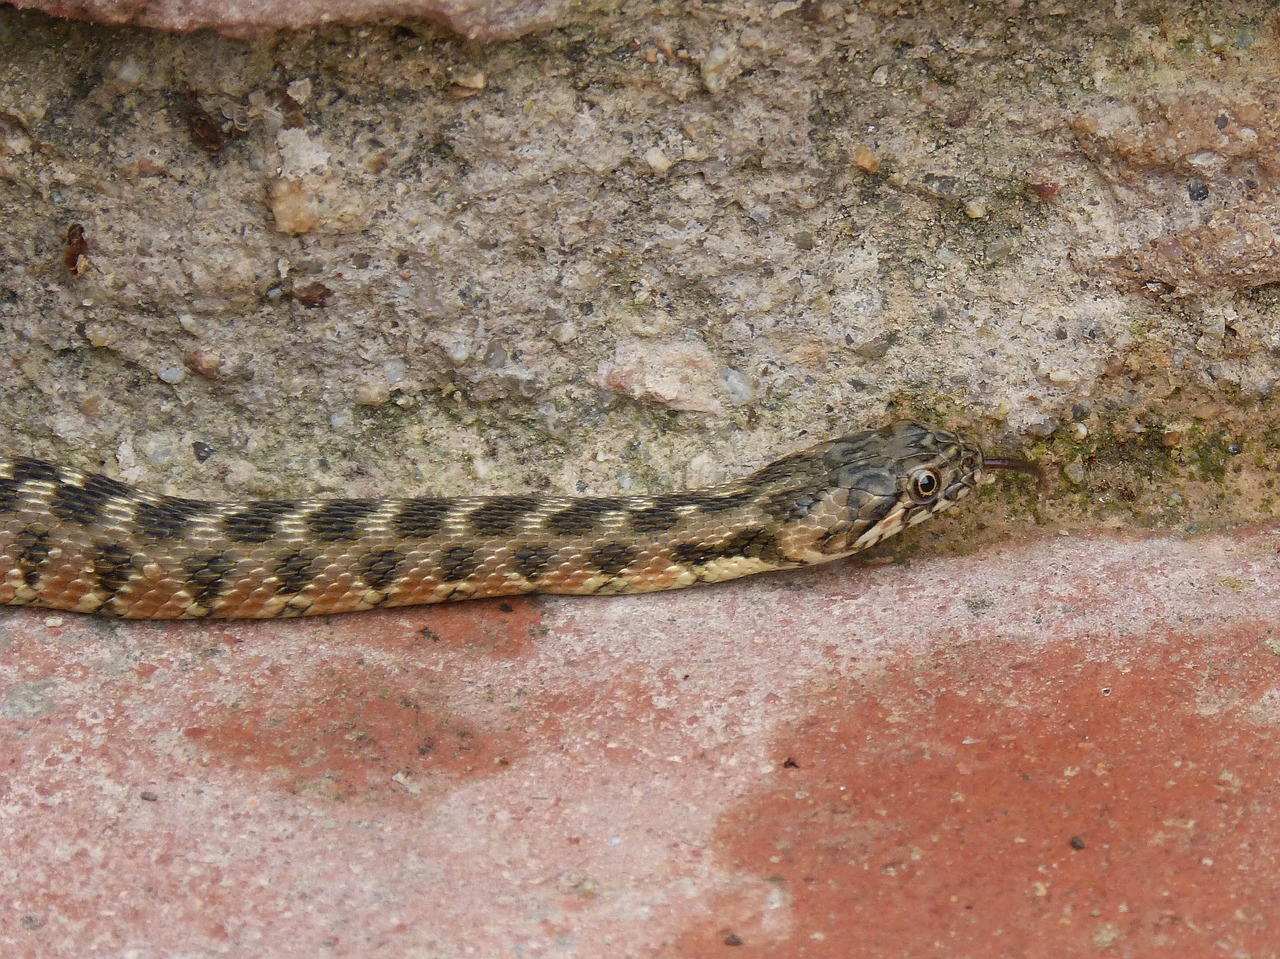 snake water snake detail free photo